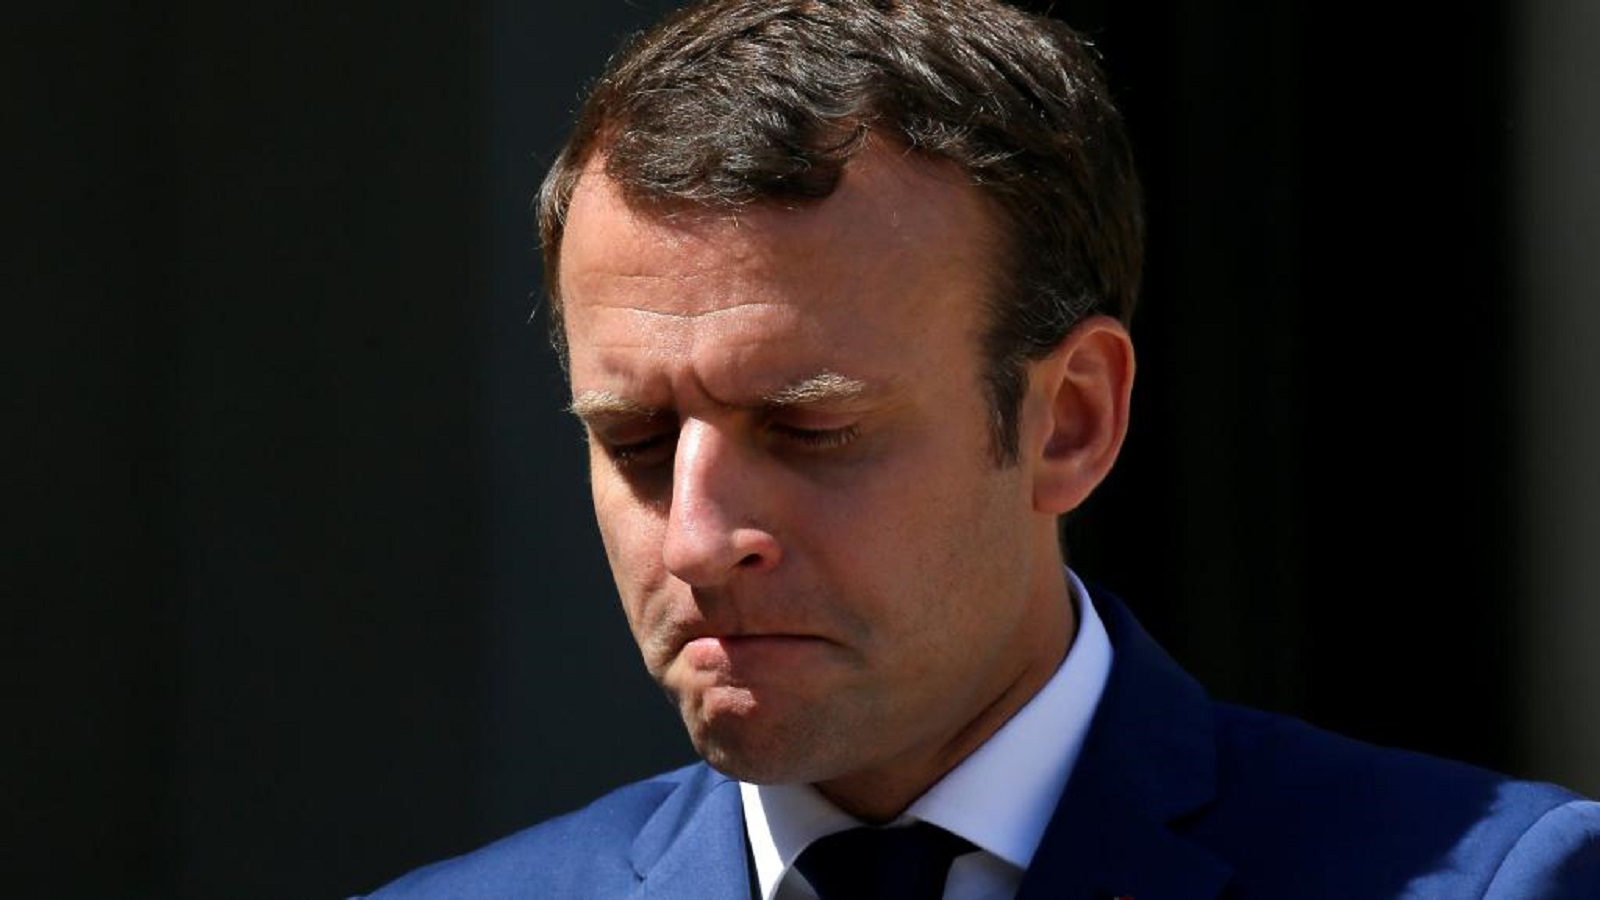 "إرهاب السوشال ميديا" يتحكّم بمصائر سياسيين فرنسيين